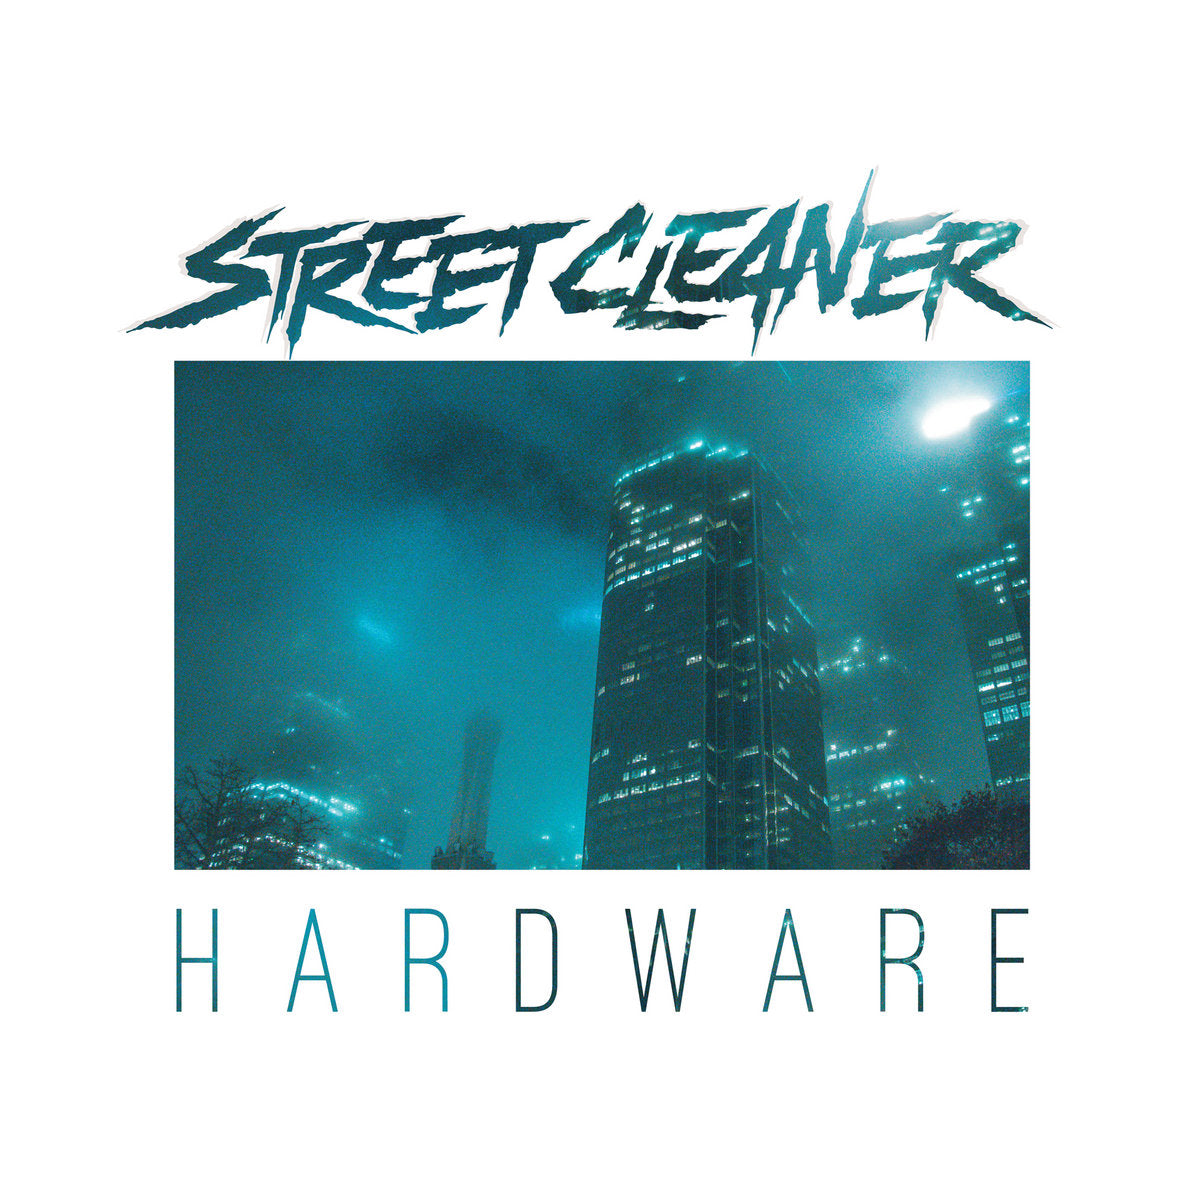 [SOLD OUT] STREET CLEANER "Hardware/Heatwave" vinyl LP (color, 180g, gatefold)